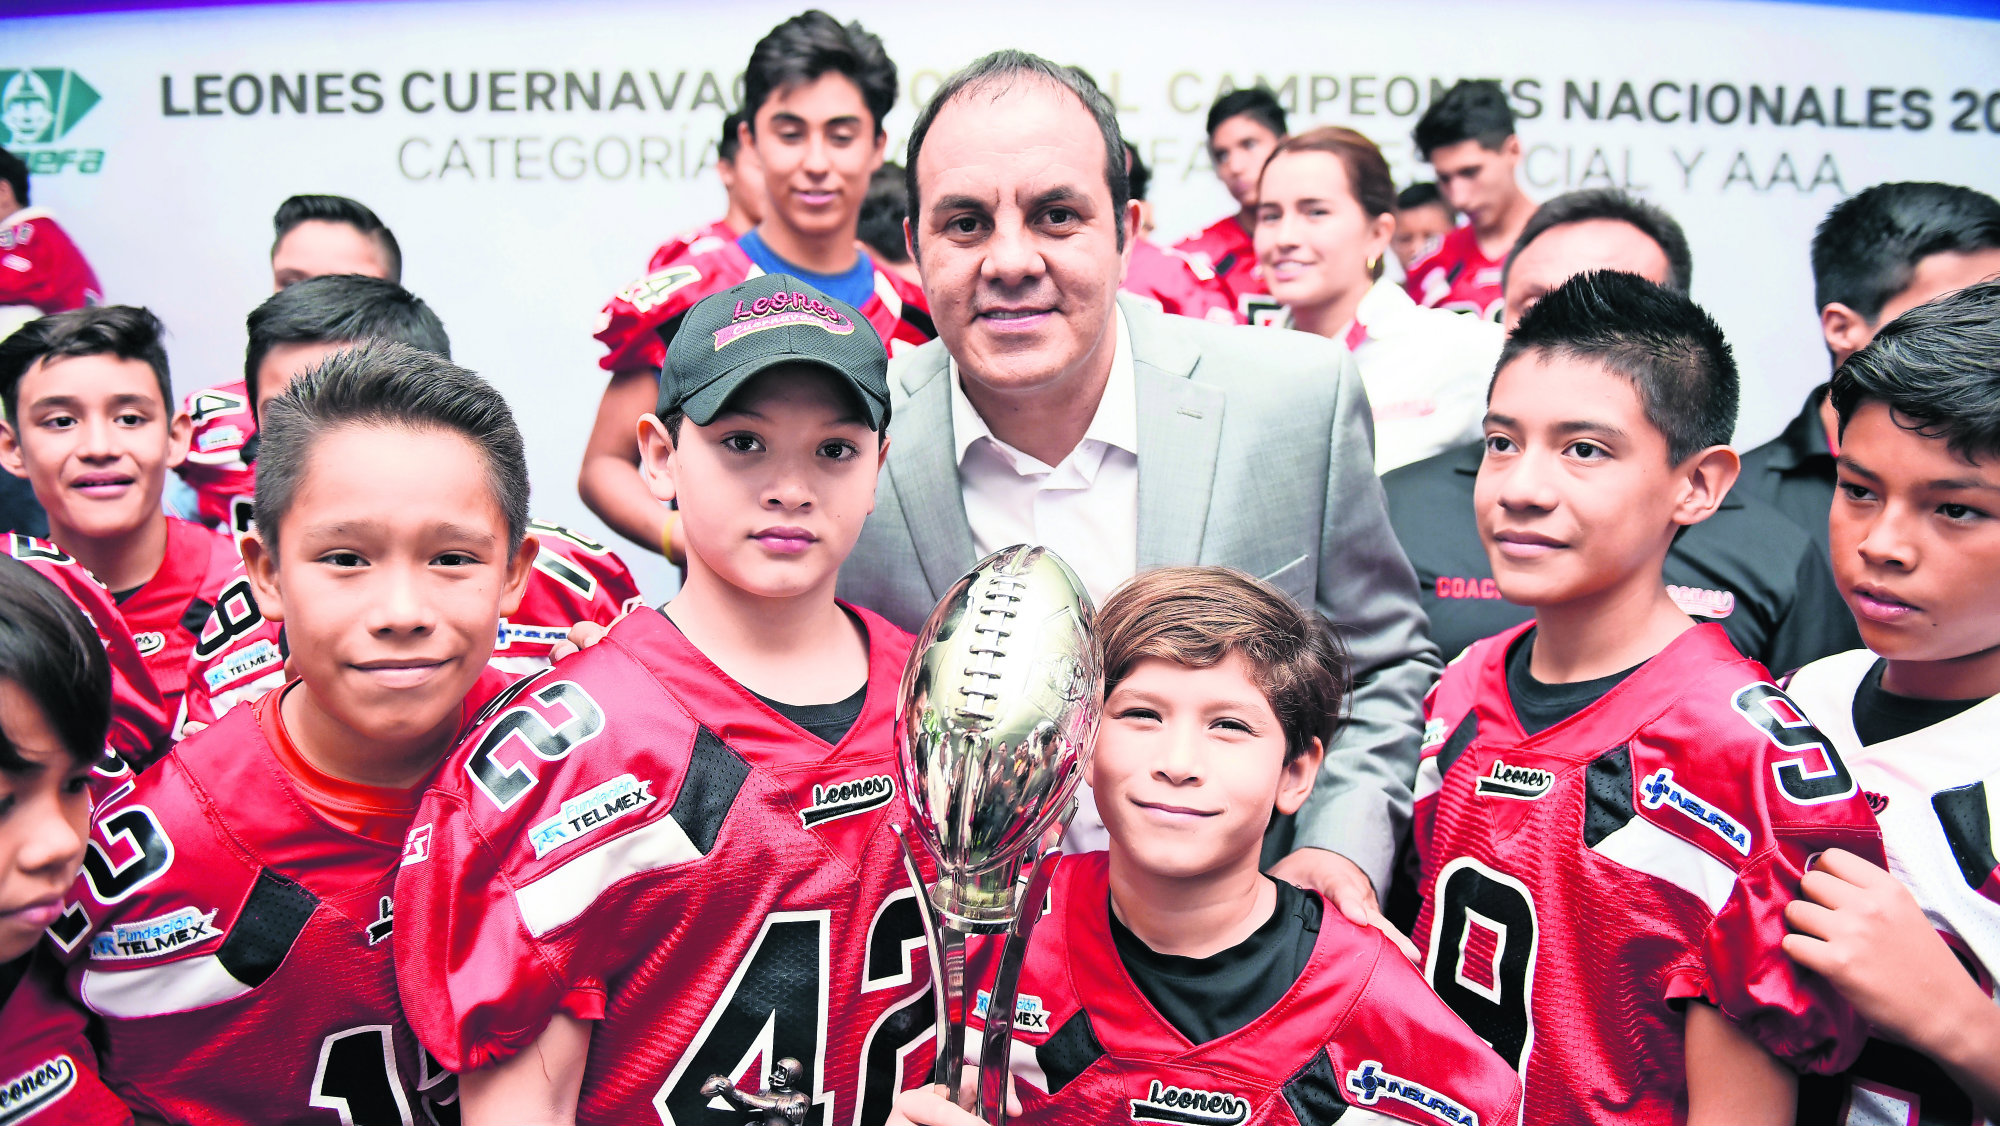 Premian a los Leones de Cuernavaca tras coronarse campeones en la ONEFA  2019 | El Gráfico Historias y noticias en un solo lugar